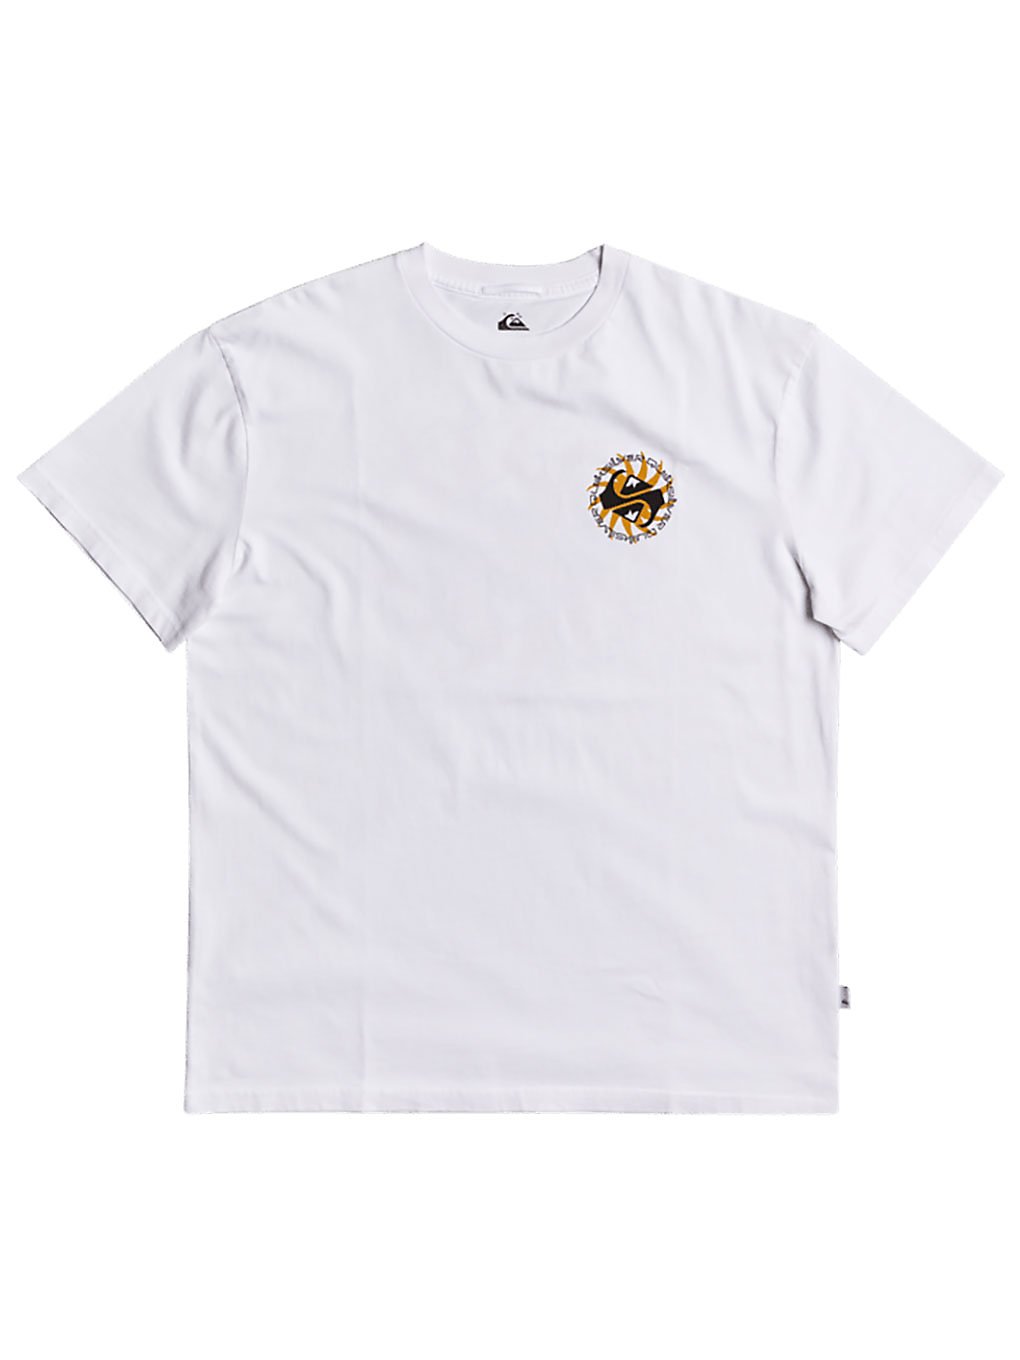 Quiksilver OG Spiral T-Shirt white